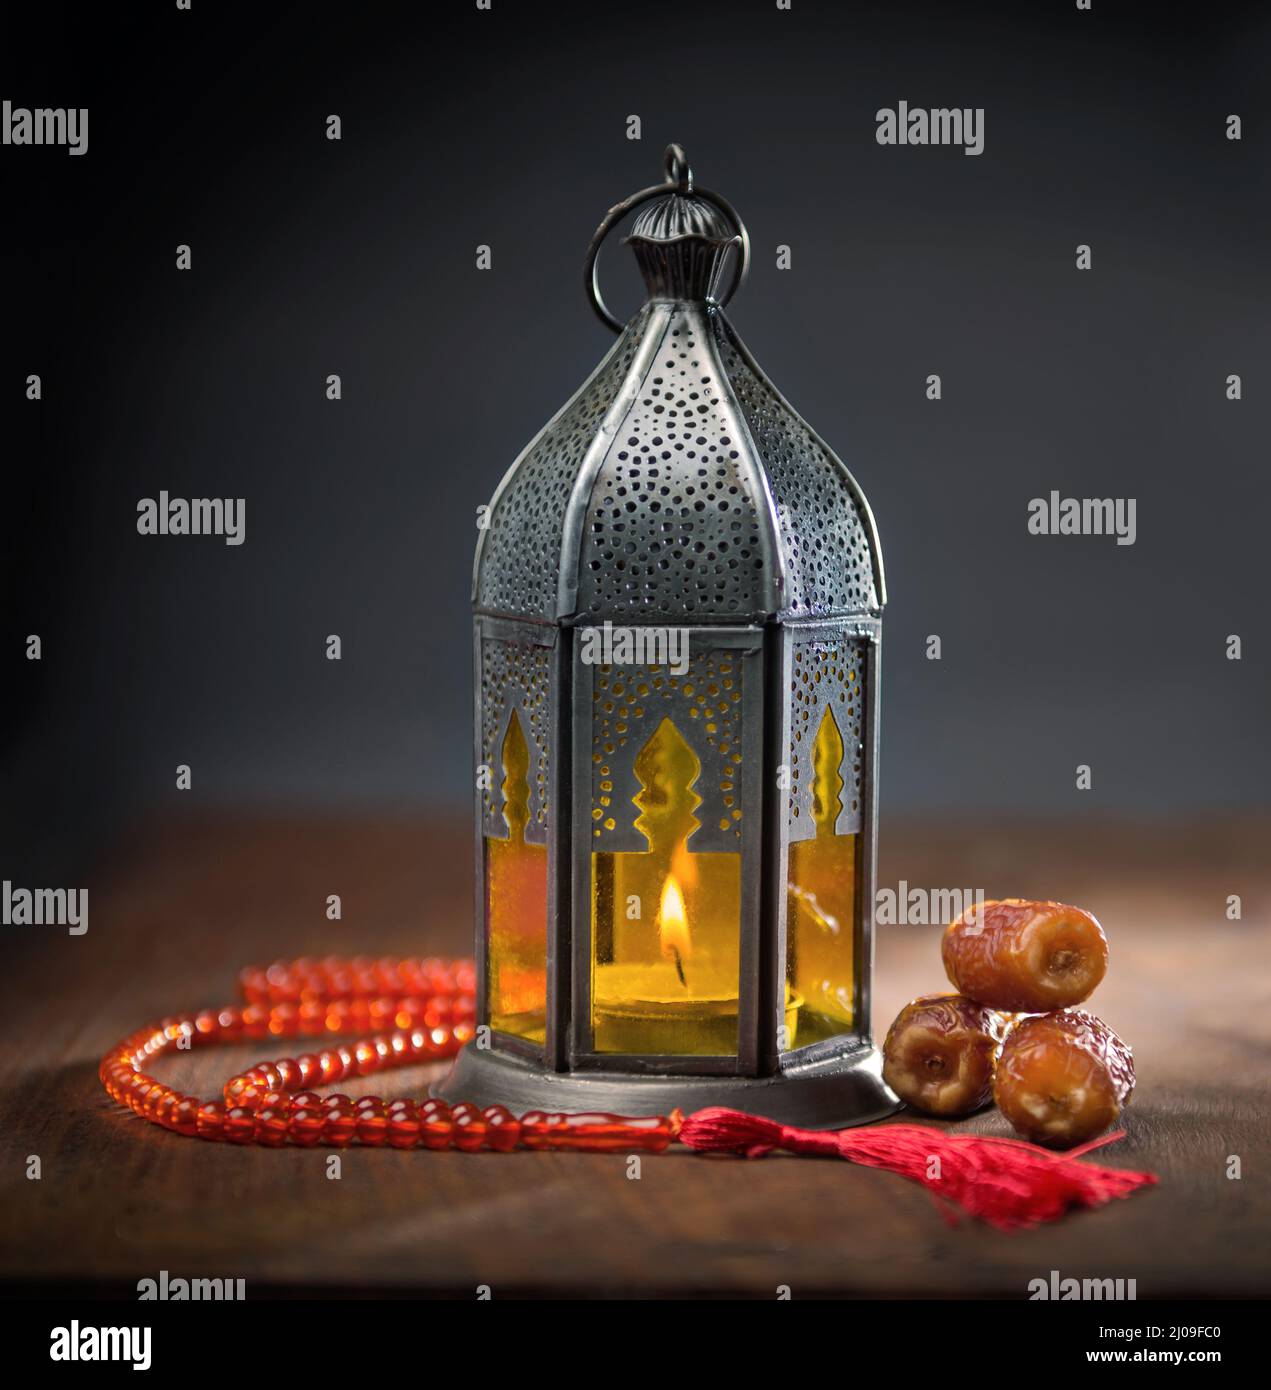 Eid Ramadan Lumière de Fée Décoratif,SL.GT Ramadan Mubarak Lampe